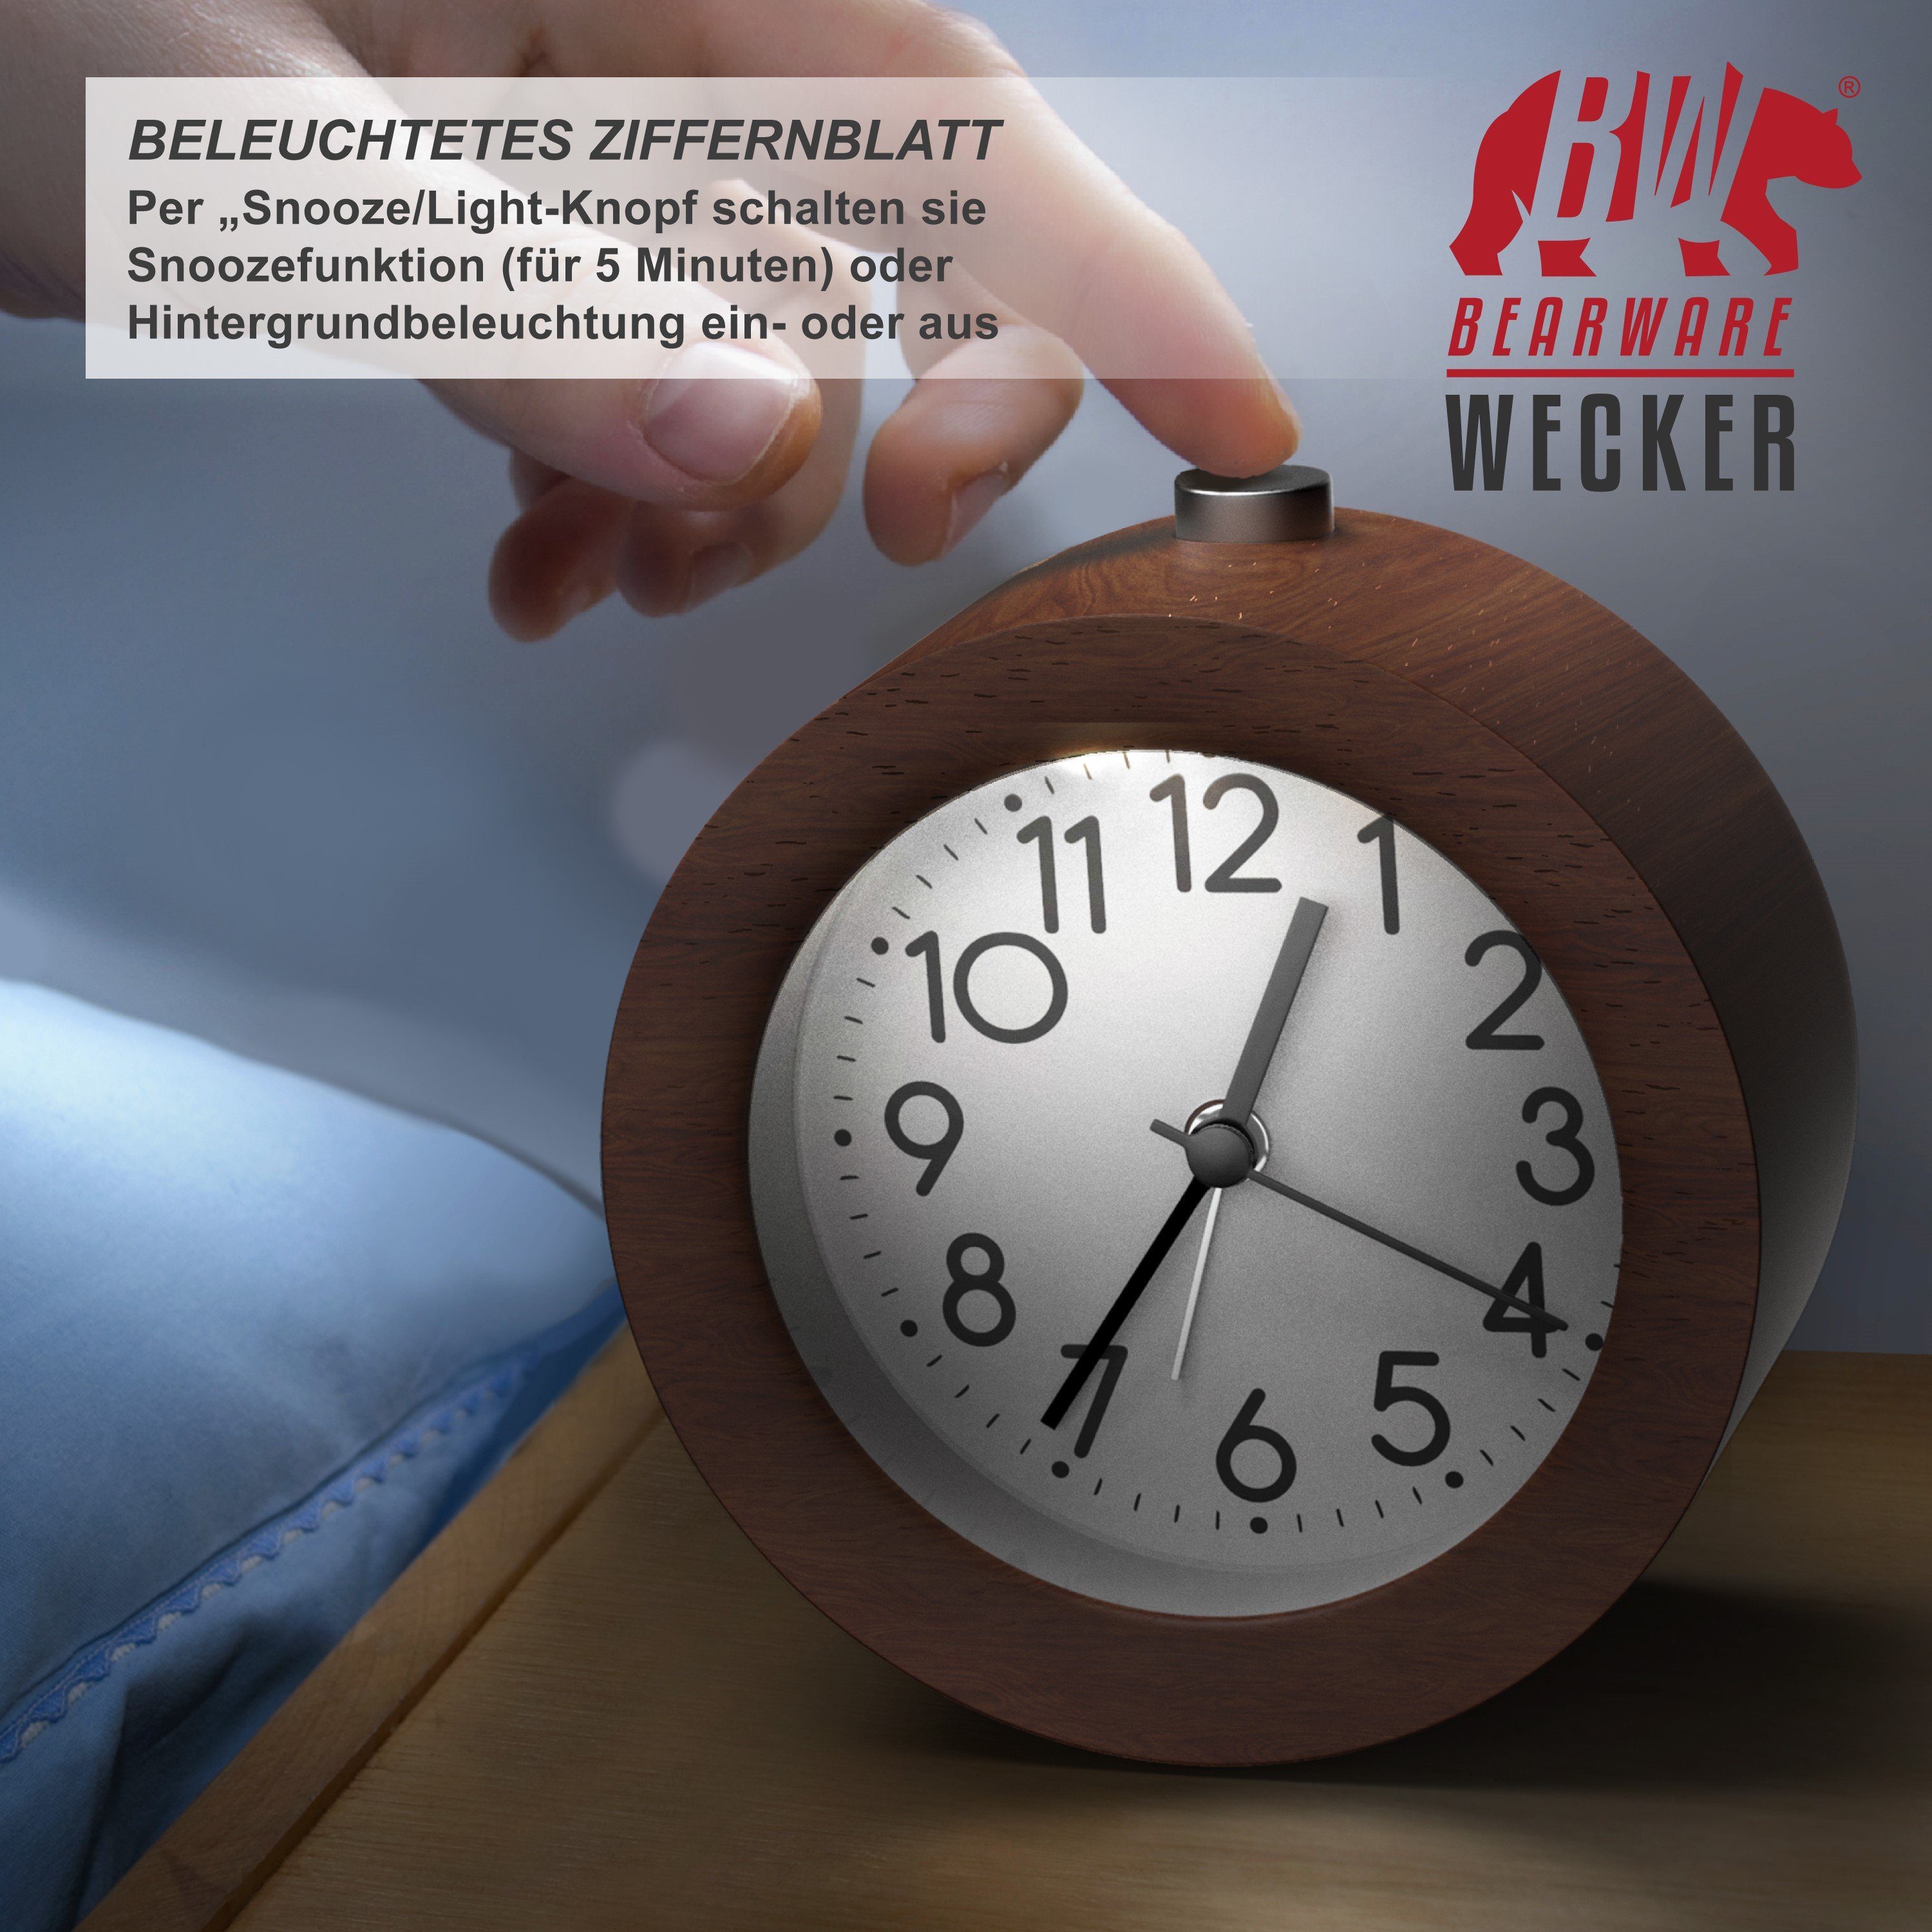 BEARWARE Wecker Analoge Weckuhr mit beleuchtetem rundem & Holzkorpus Nussbaum Ziffernblatt